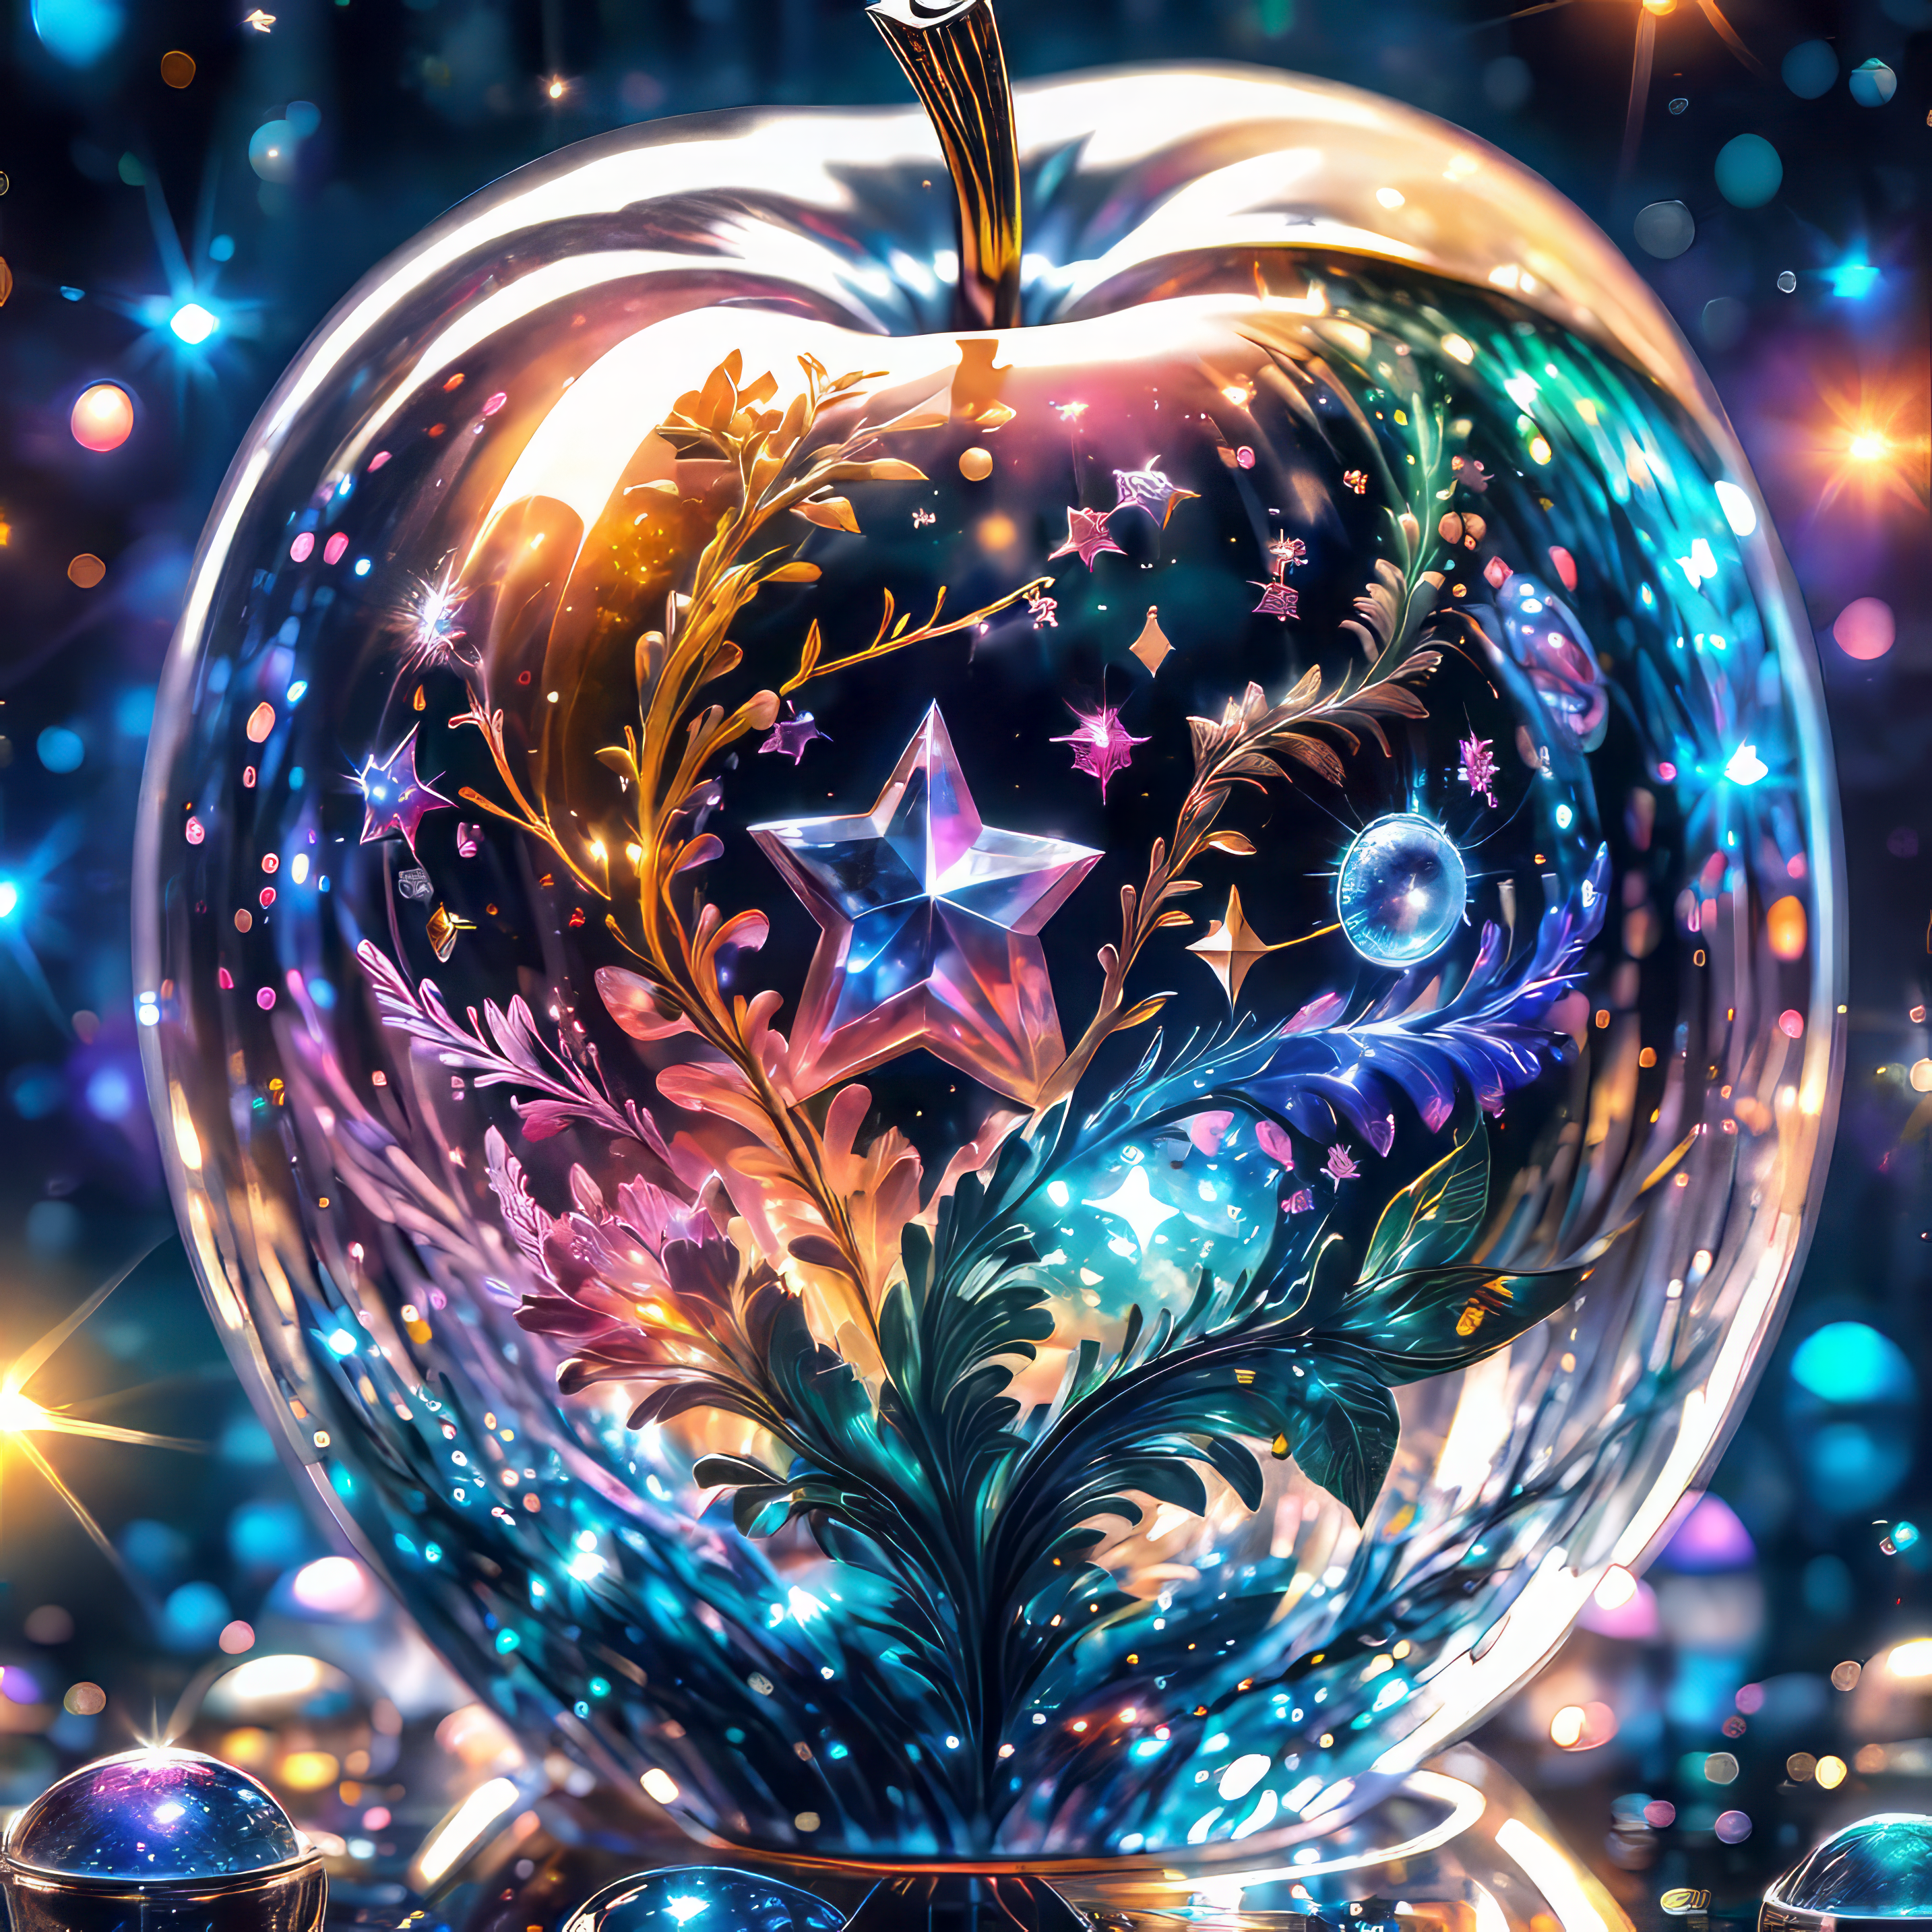 かわいいネオンと虹色の星が映るガラスのリンゴの癒しの無料リアル写真風の画像素材